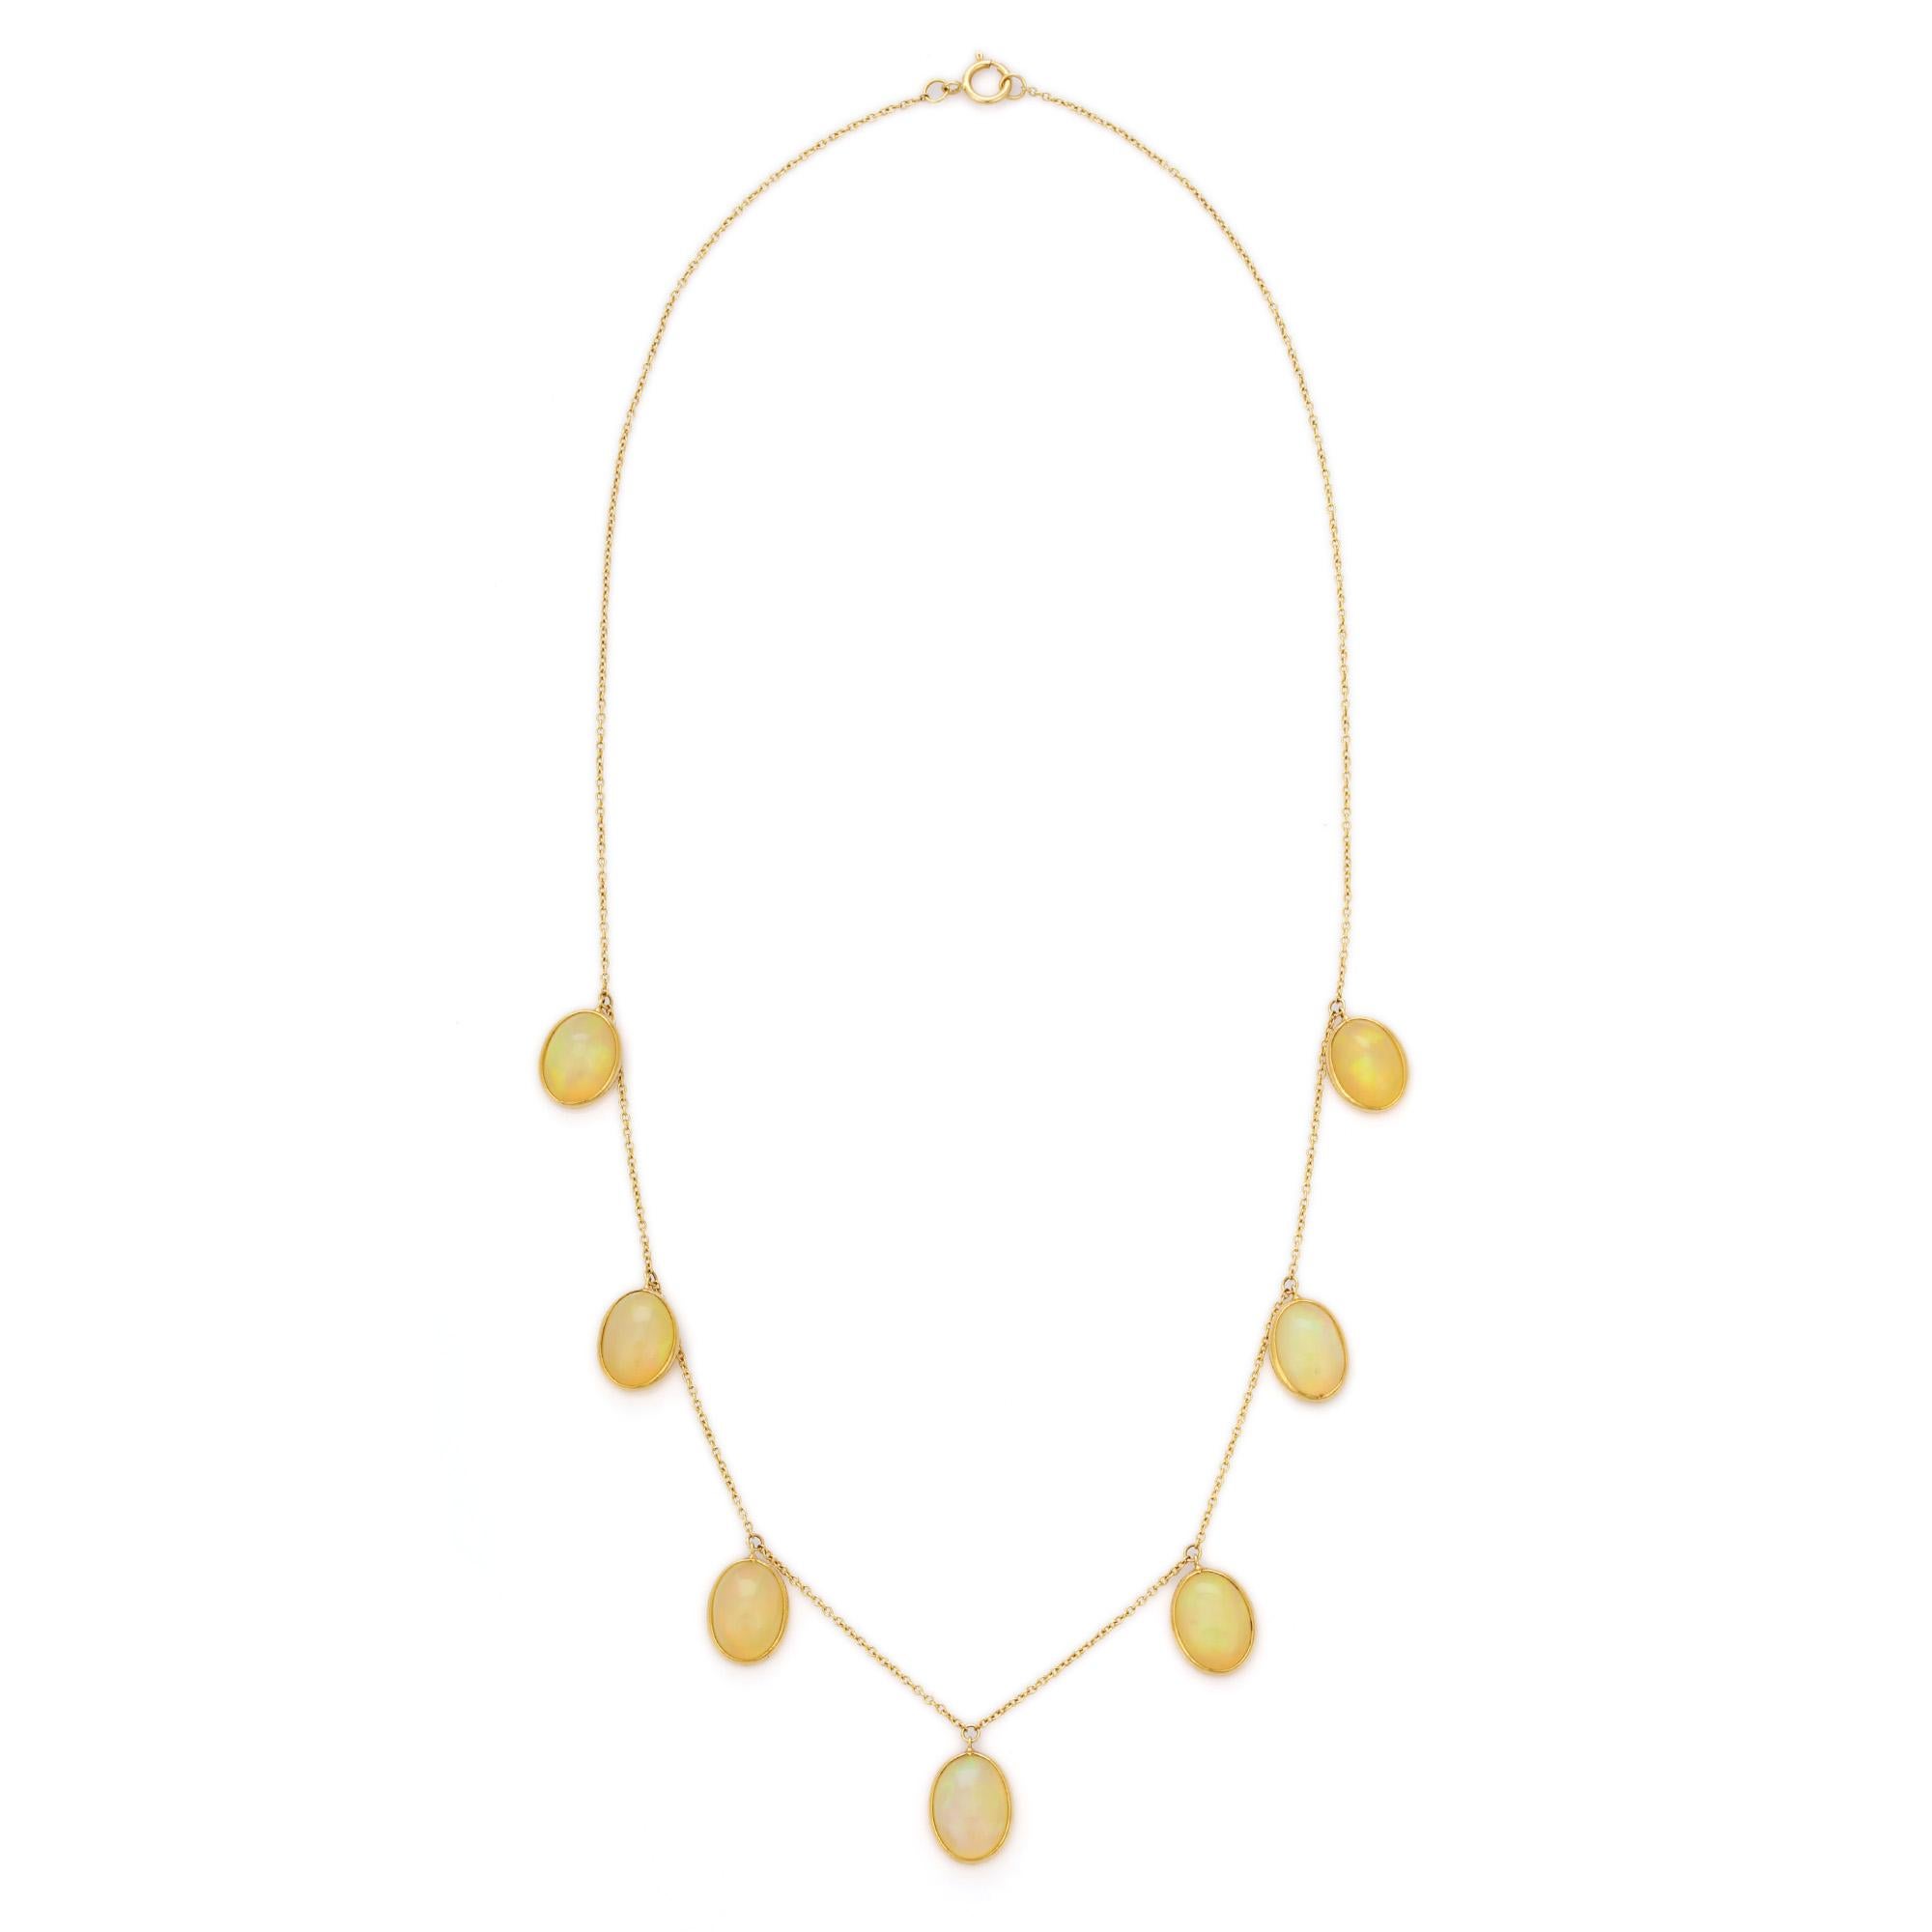 Opal-Charm-Halskette aus 18 Karat Gold, besetzt mit einem Opal im Ovalschliff.
Ergänzen Sie Ihren Look mit dieser eleganten Halskette mit Opal-Anhängern. Dieses atemberaubende Schmuckstück wertet einen Freizeitlook oder ein elegantes Outfit sofort